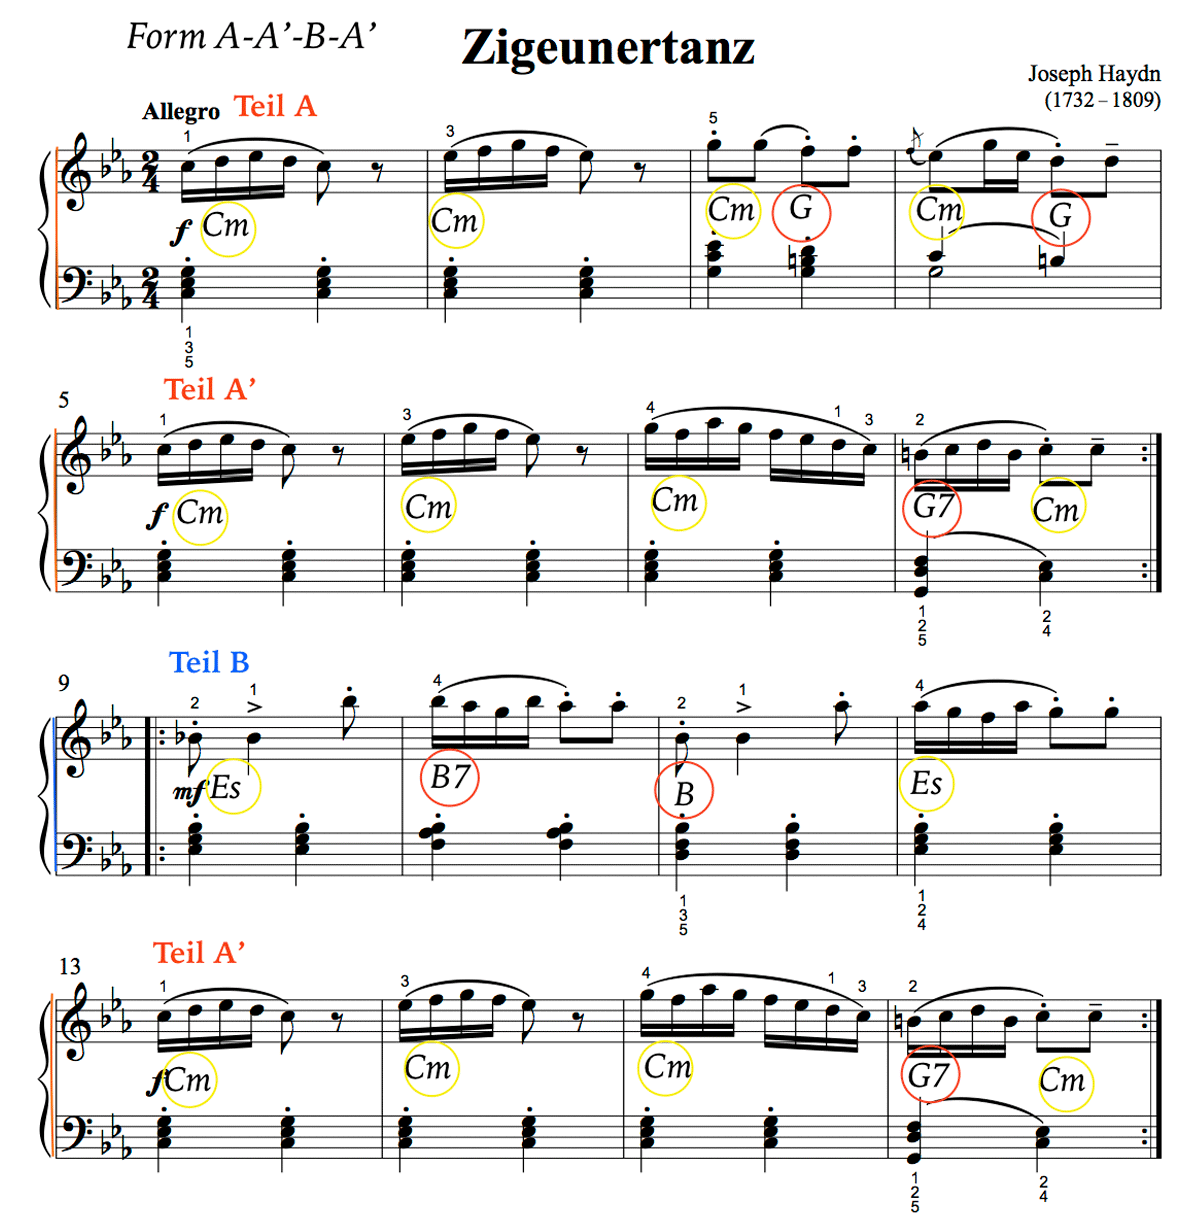 Form und Harmonie von Joseph Haydn: Zigeunertanz